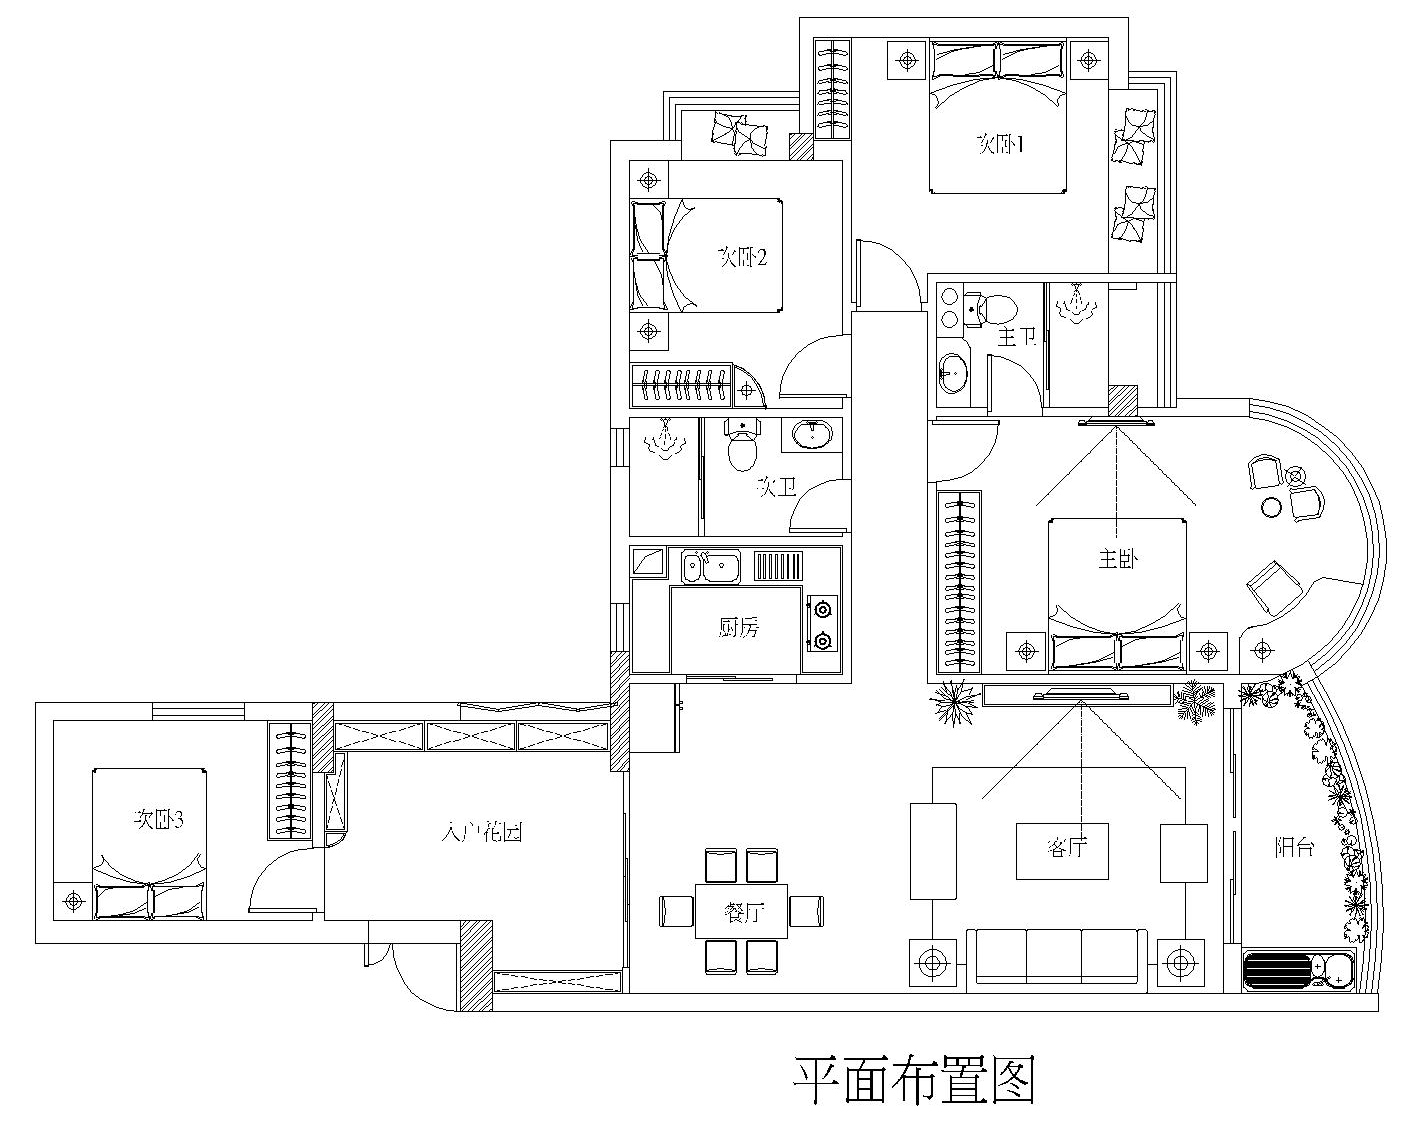 欧式 简约 四居 装修 风水 佳大银湾 家居 生活 150平米 户型图图片来自曹丹在佳大银湾-简约欧式-4居室的分享